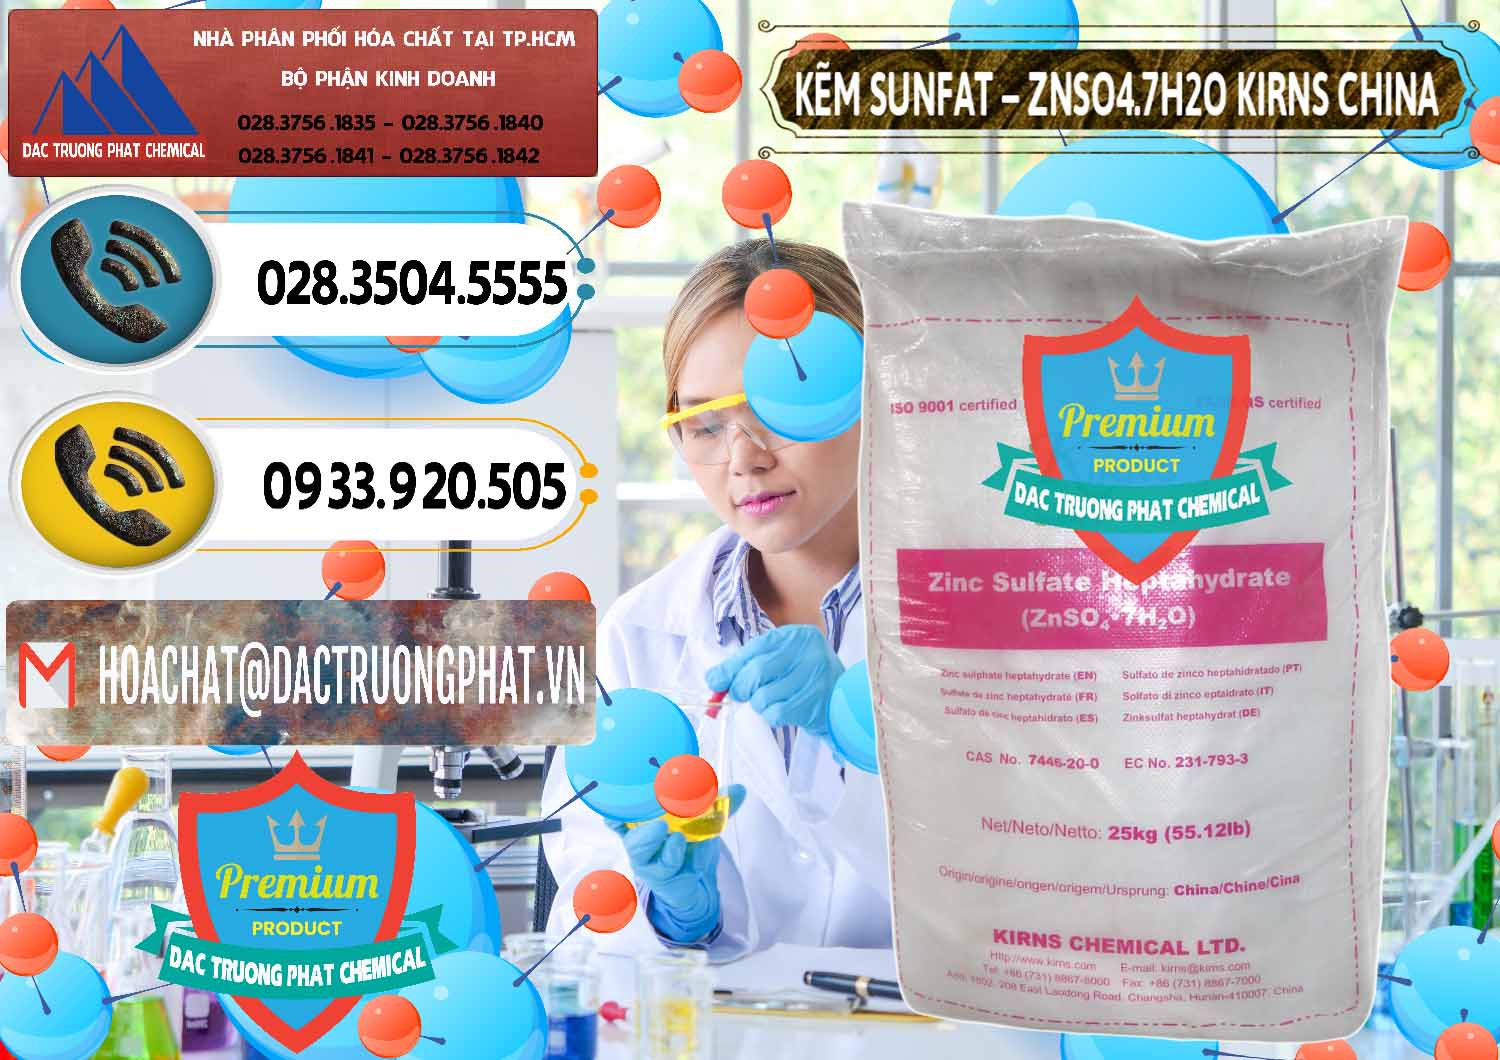 Cty kinh doanh & bán Kẽm Sunfat – ZNSO4.7H2O Kirns Trung Quốc China - 0089 - Công ty phân phối và cung ứng hóa chất tại TP.HCM - hoachatdetnhuom.vn